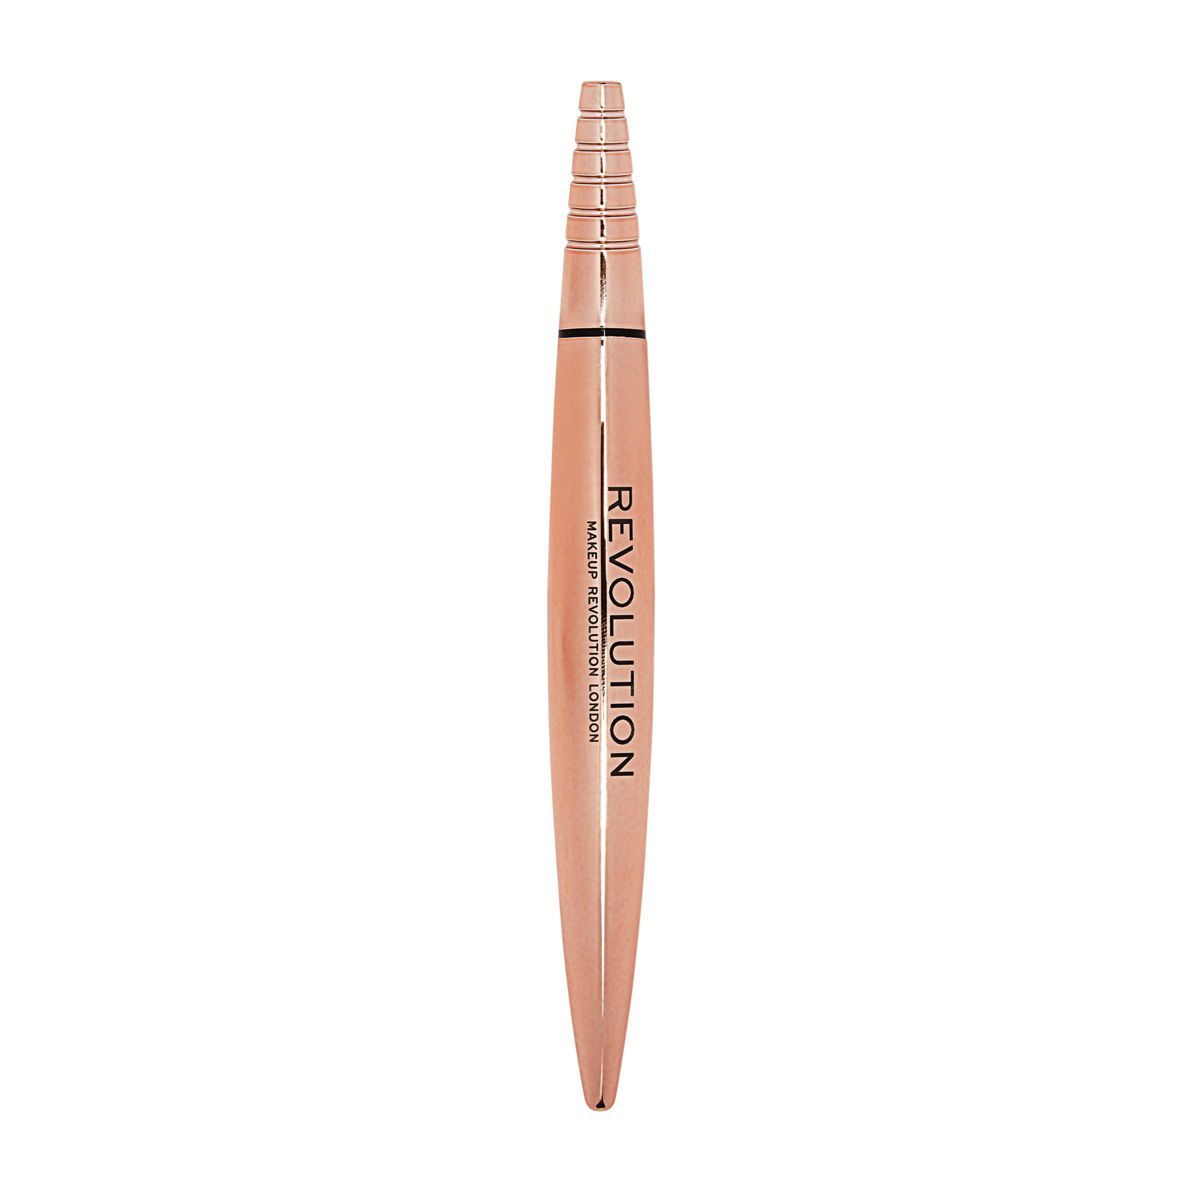 Makeup Revolution Ren Flick Liquid Eyeliner Pen - Black - 0.020 fl oz | Target